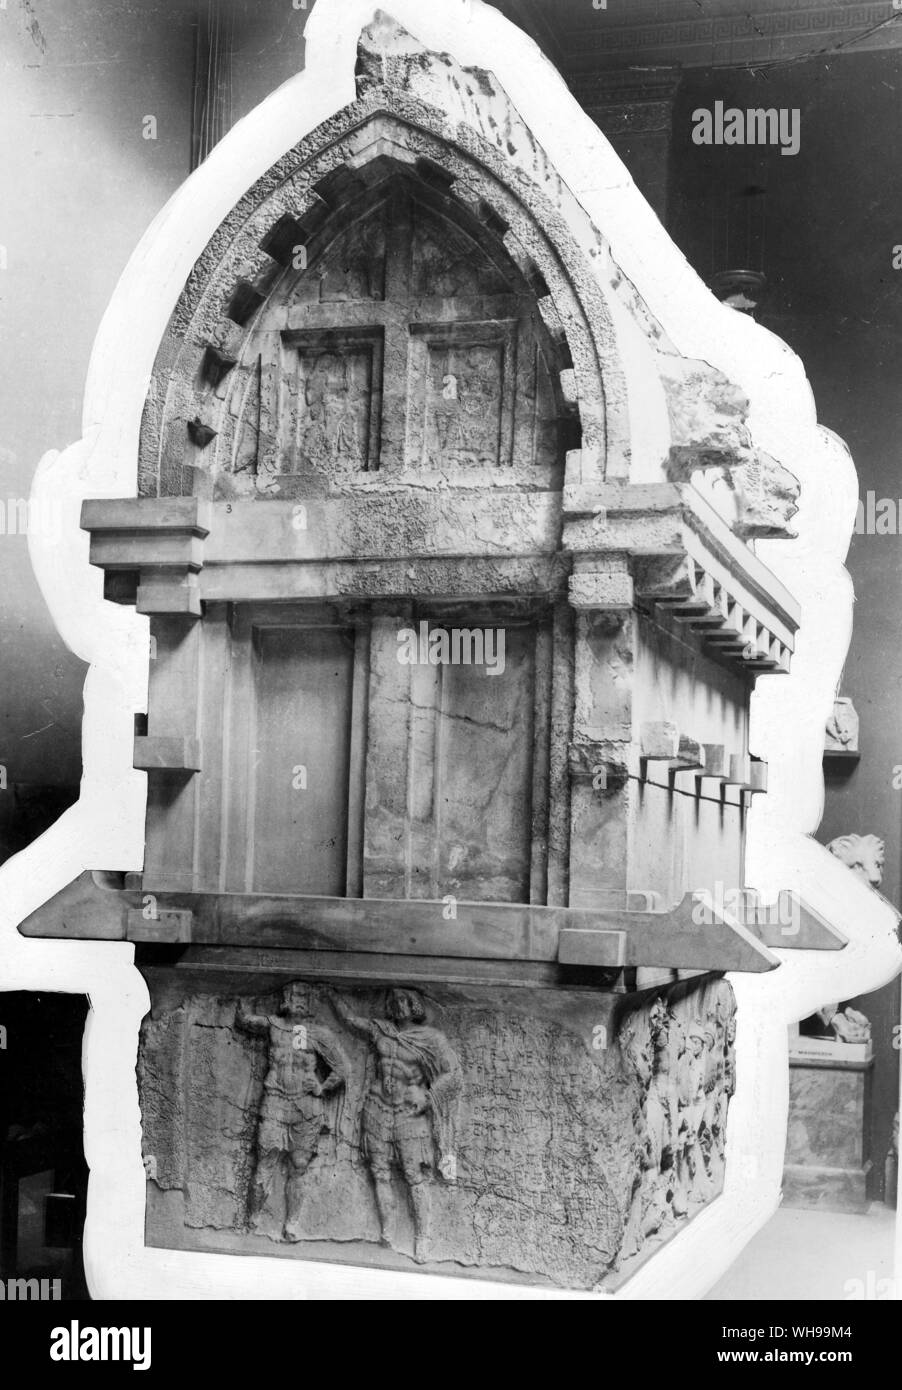 El licio tumba construida probablemente para un príncipe Licio o persa alrededor de 375 A.C. Foto de stock